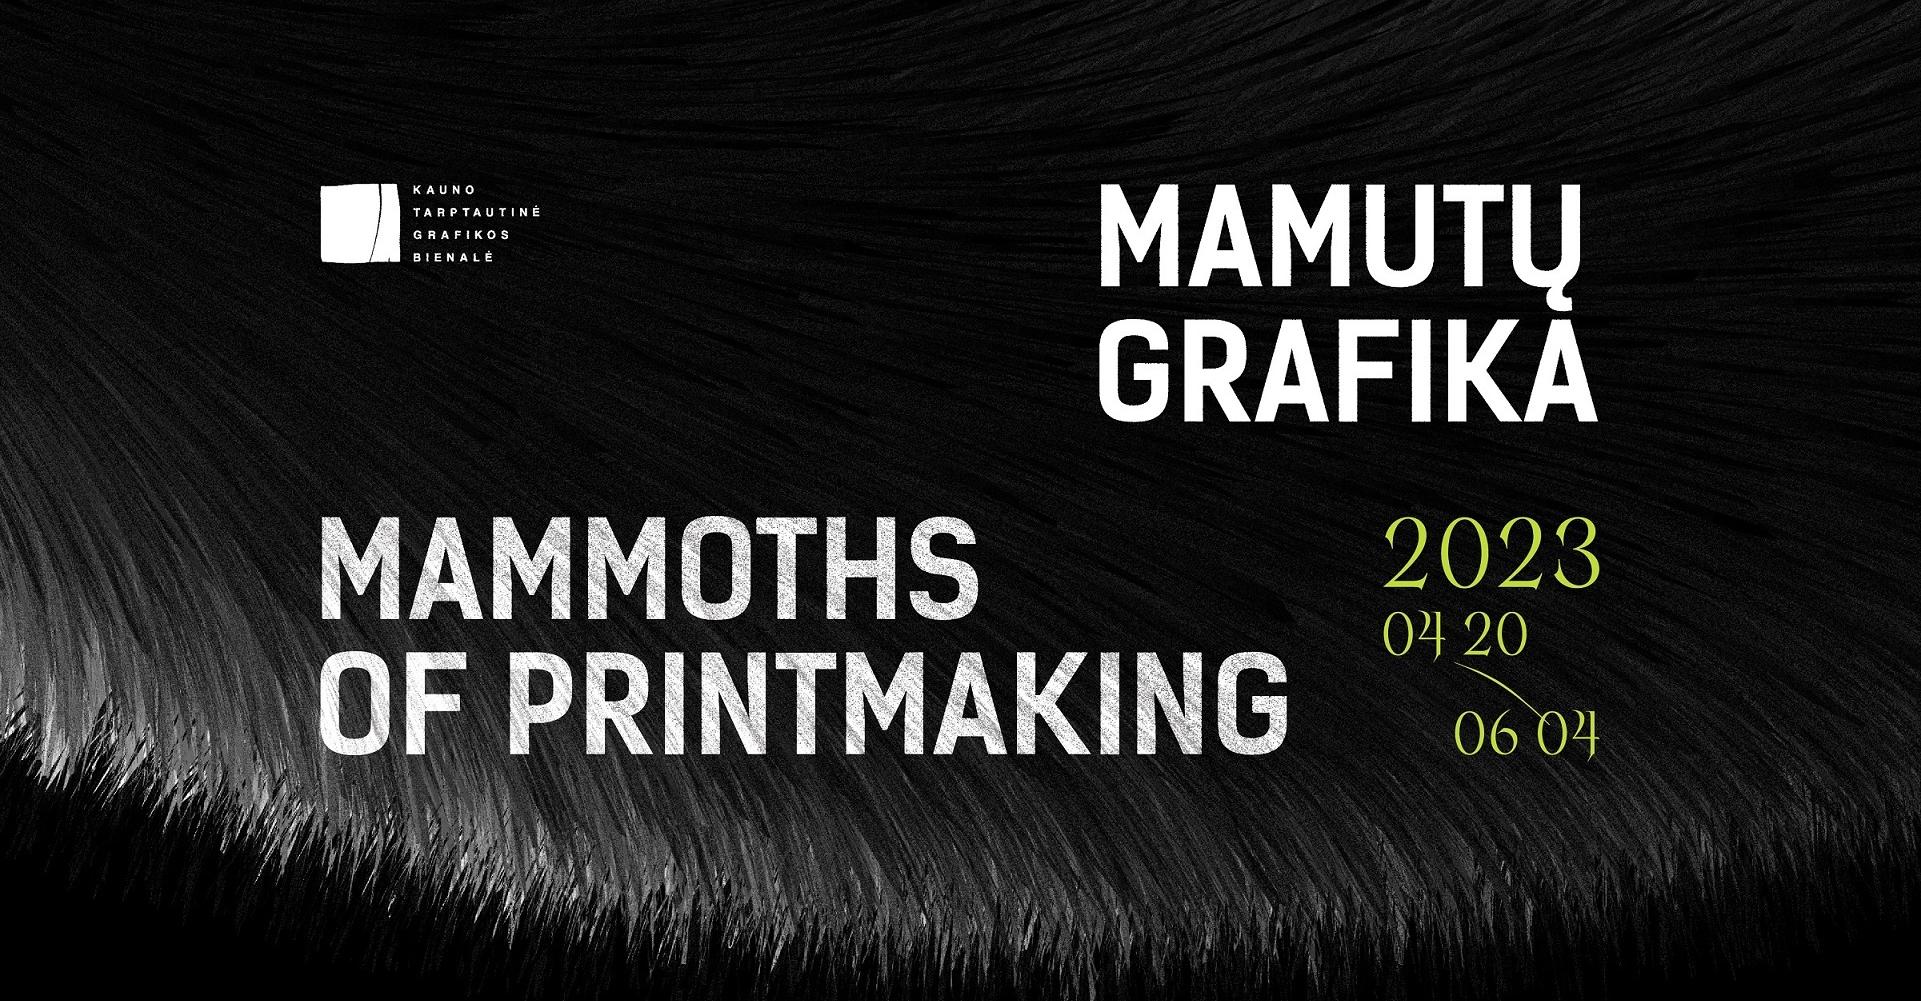 Kauno tarptautinė grafikos bienalė „Mamutų grafika“